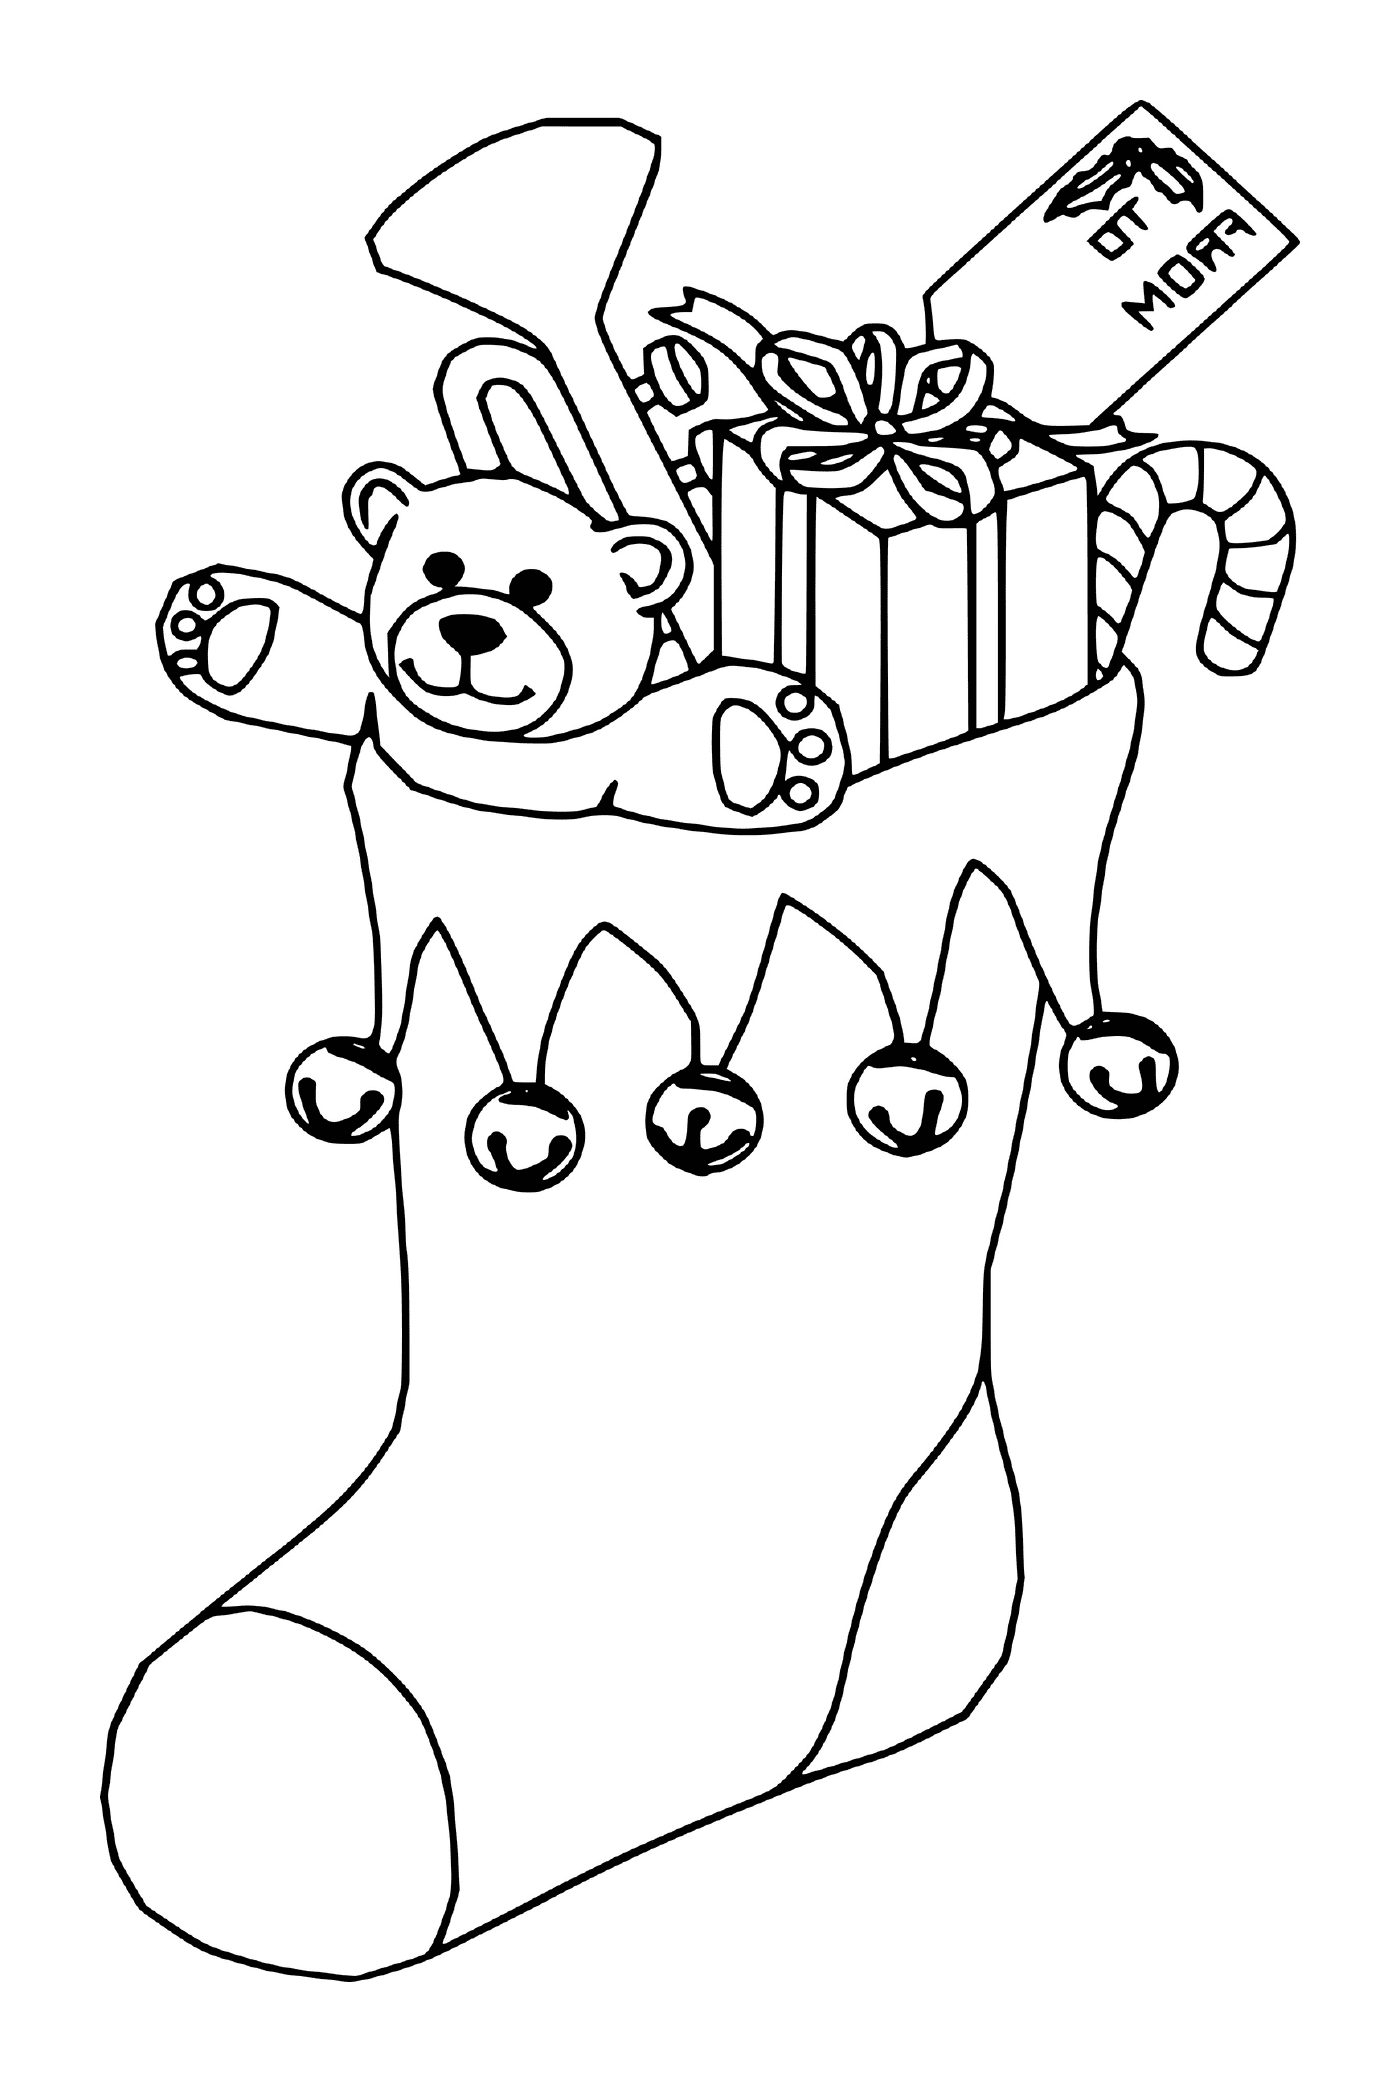  Un orsacchiotto che suona la tromba in calze natalizie 